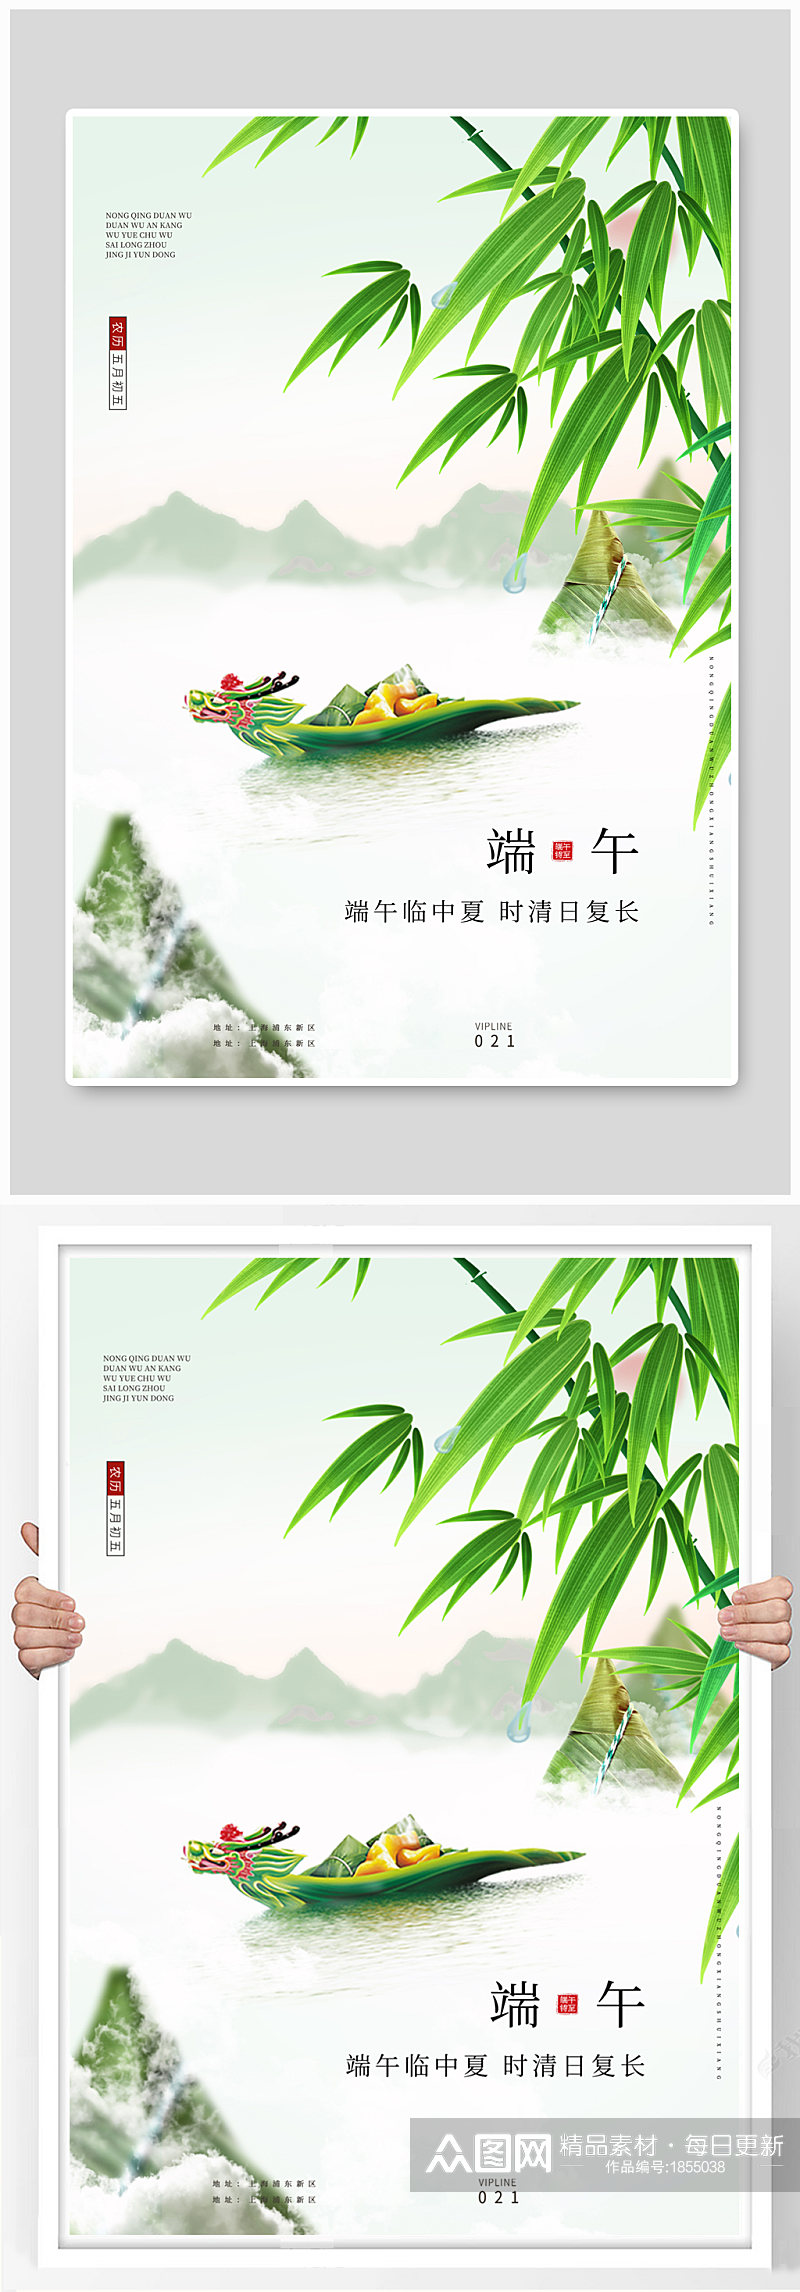 端午创意宣传海报中国风素材